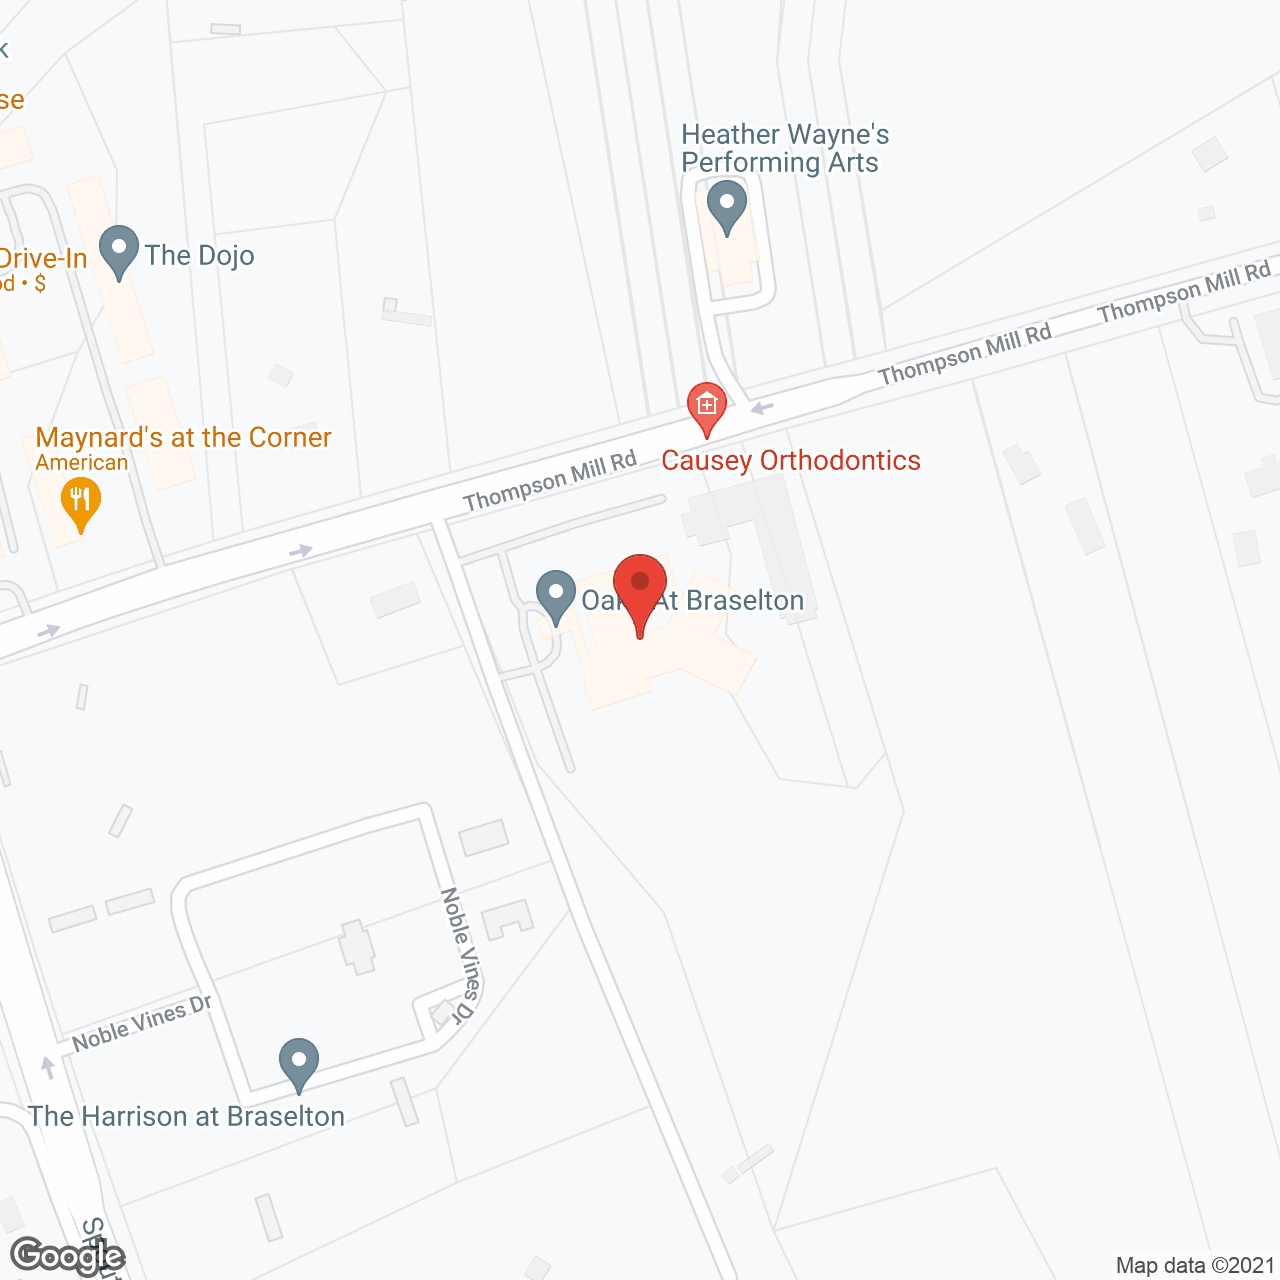 Oaks at Braselton in google map